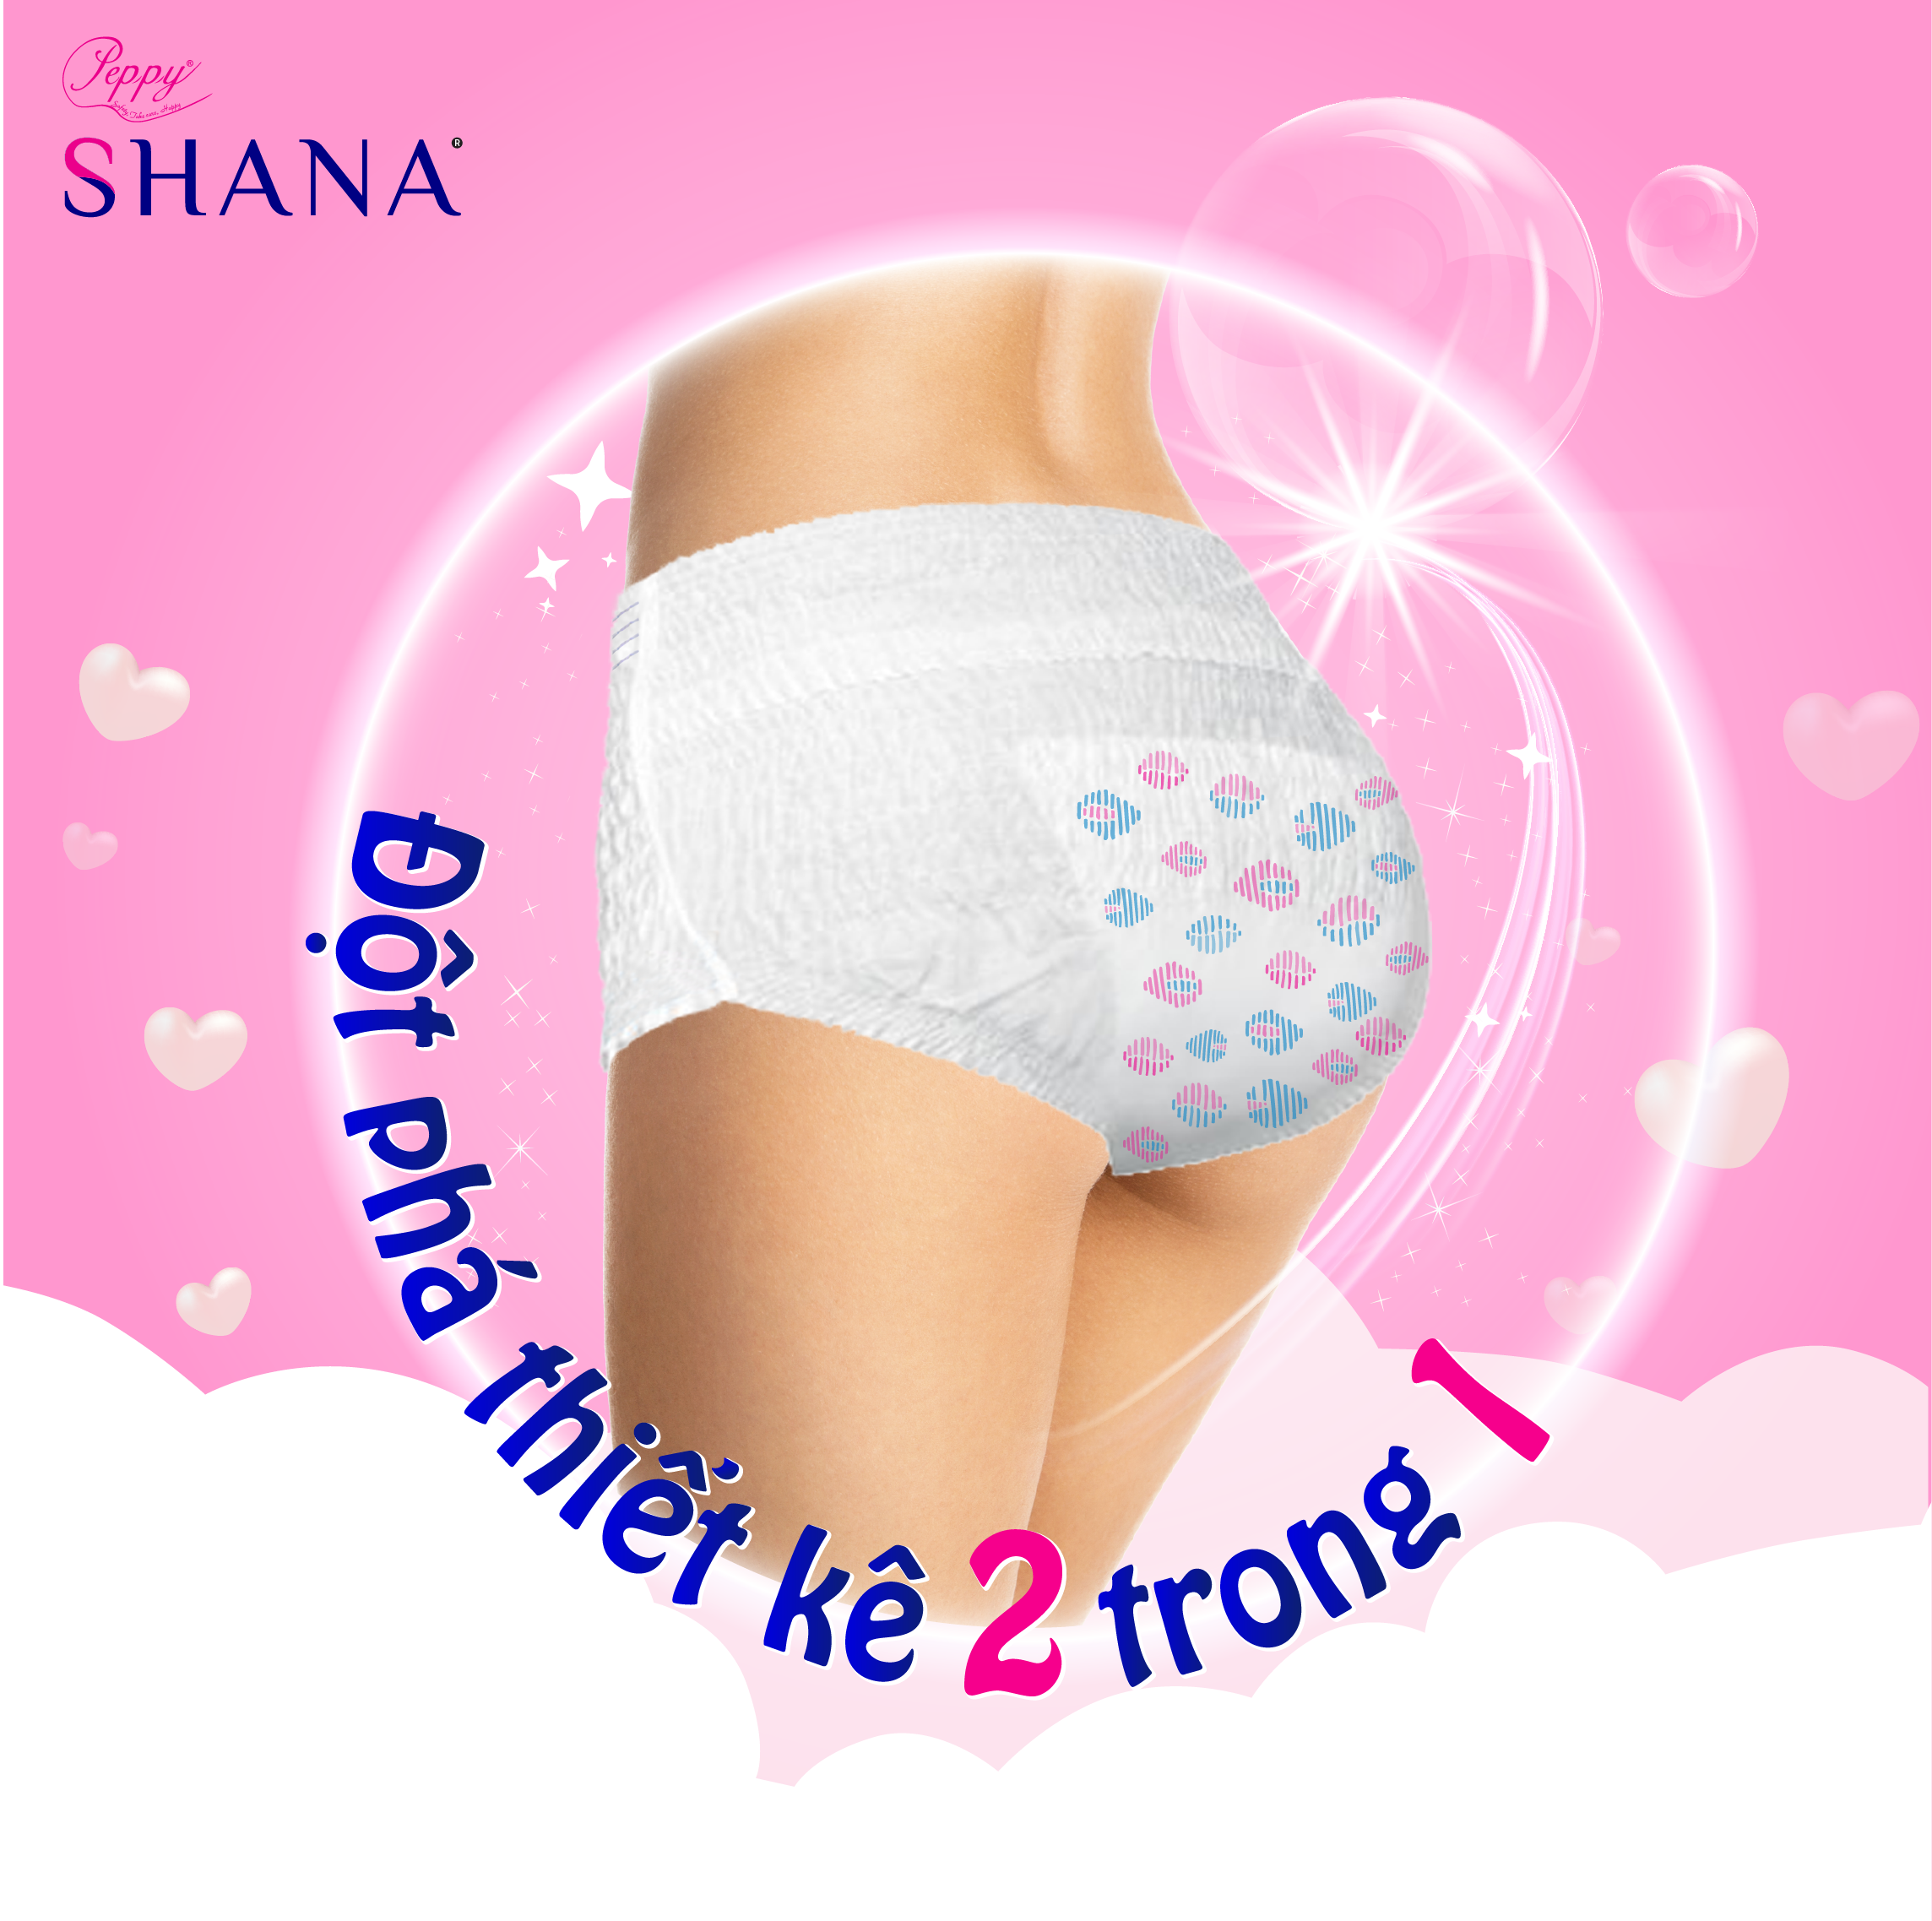 Mua 1 gói Băng vệ sinh quần cao cấp Shana siêu mềm, dùng ban đêm tặng 1 gói cùng loại